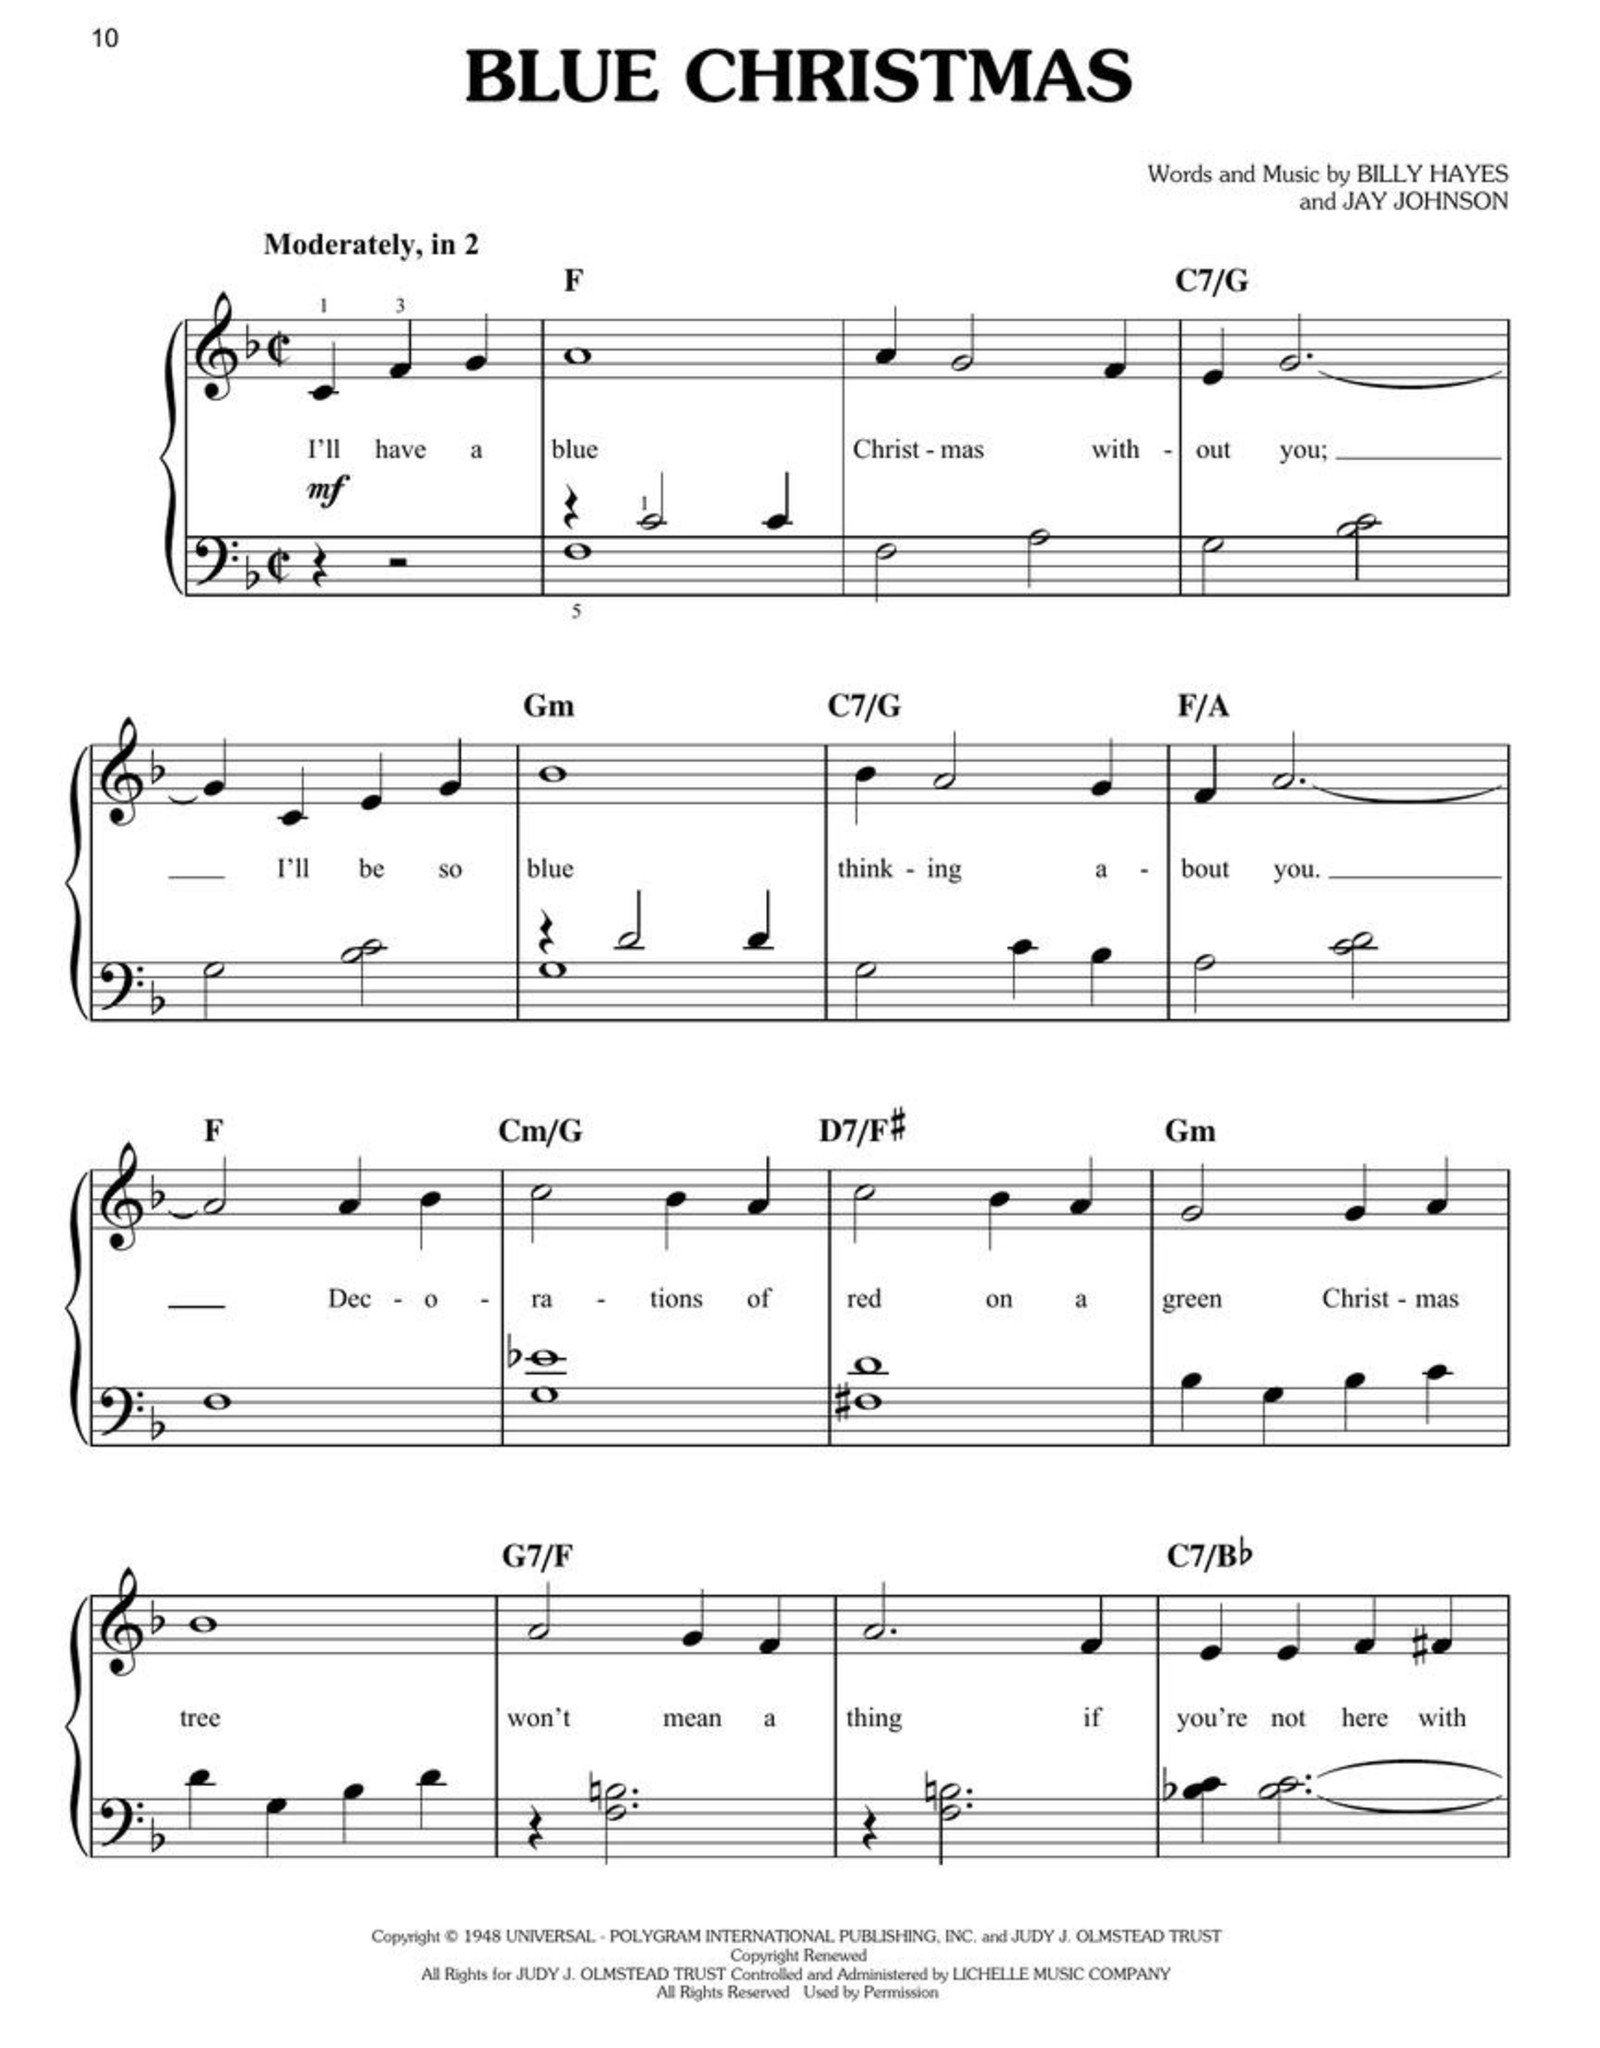 Hal Leonard Christmas Songs in Easy Keys - Easy Piano